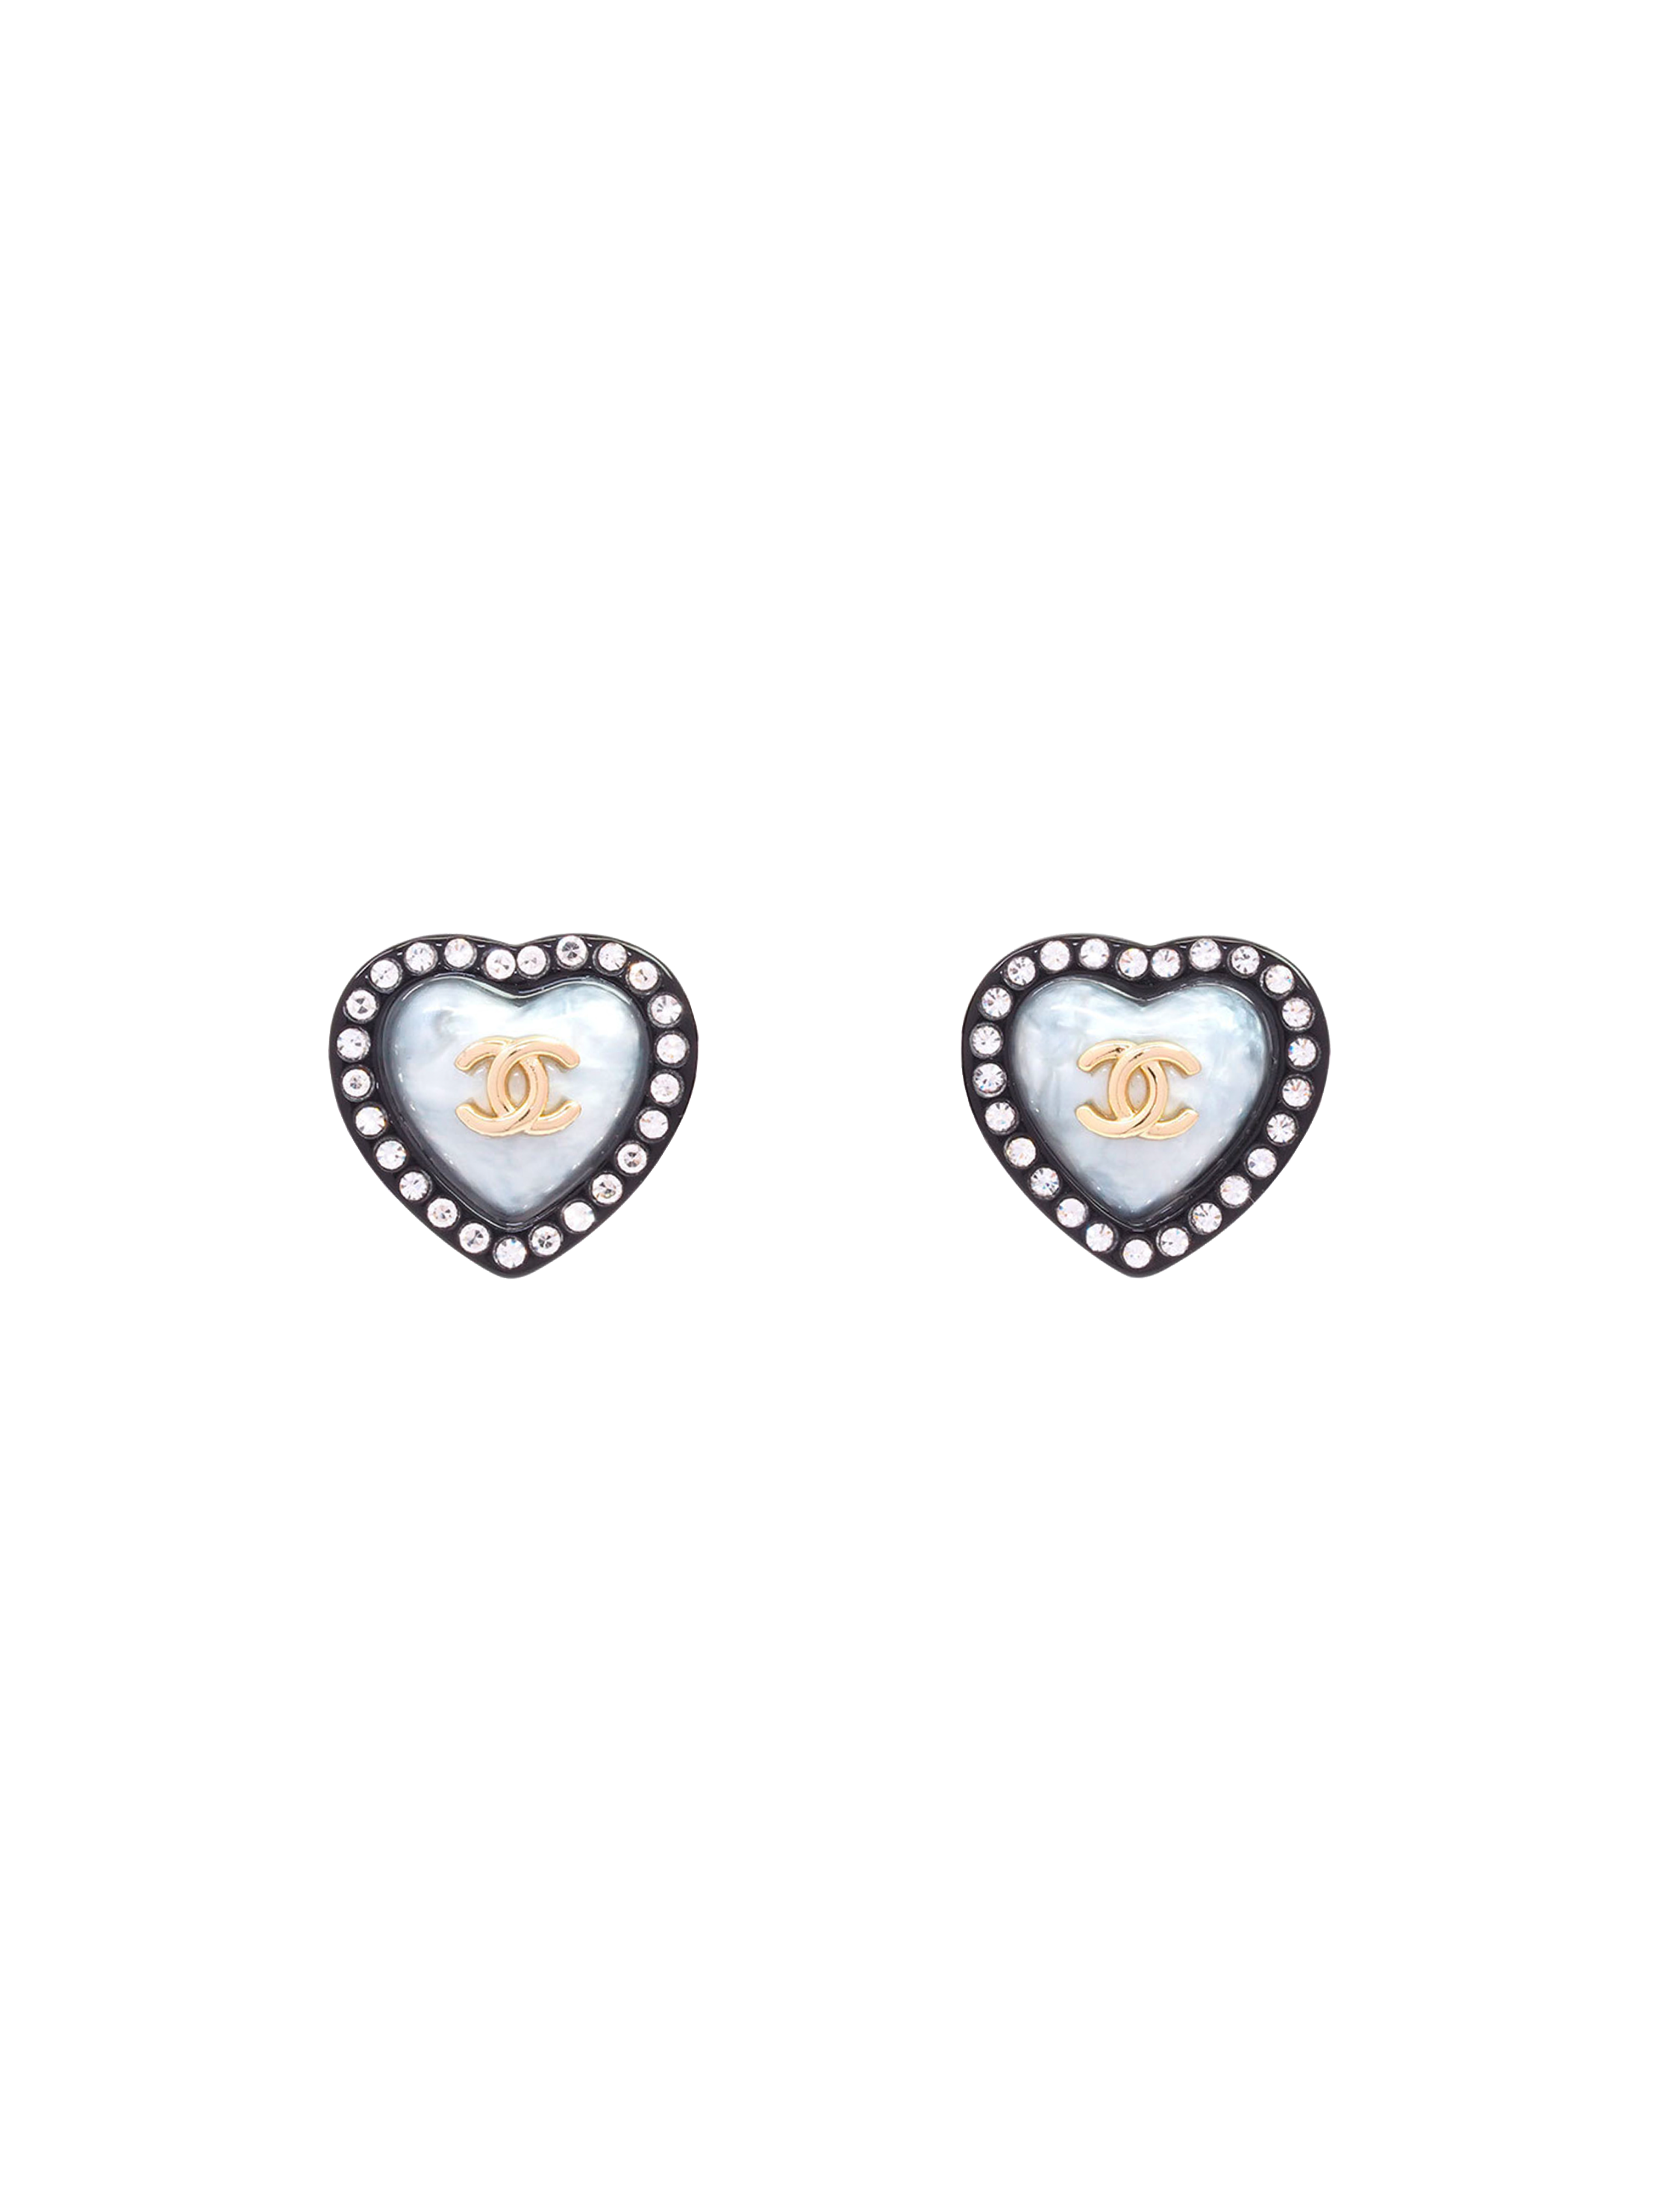 Chanel Vintage Heart Shaped Earrings – Coconana